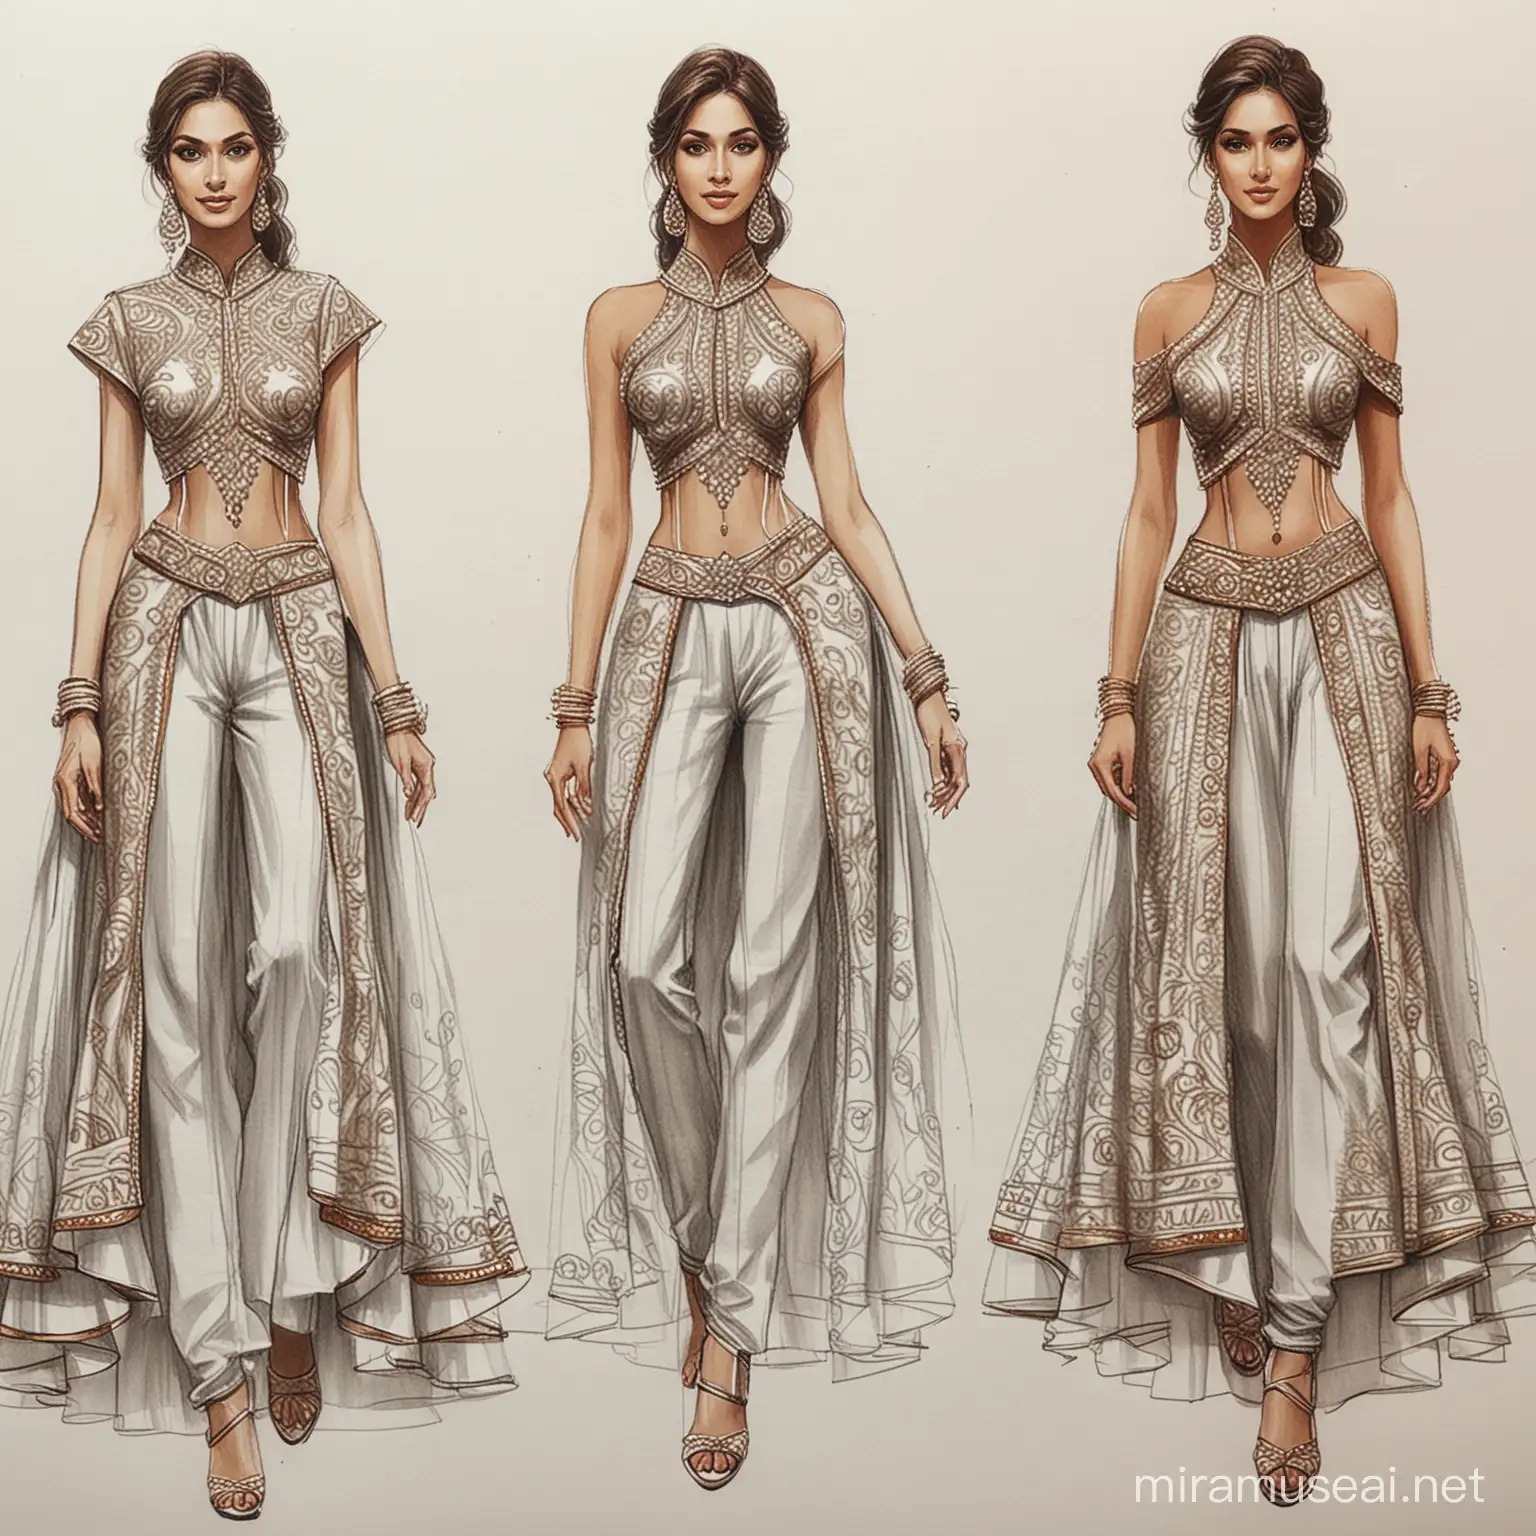 Elegant Indo Western High Fashion Garment Sketch Development